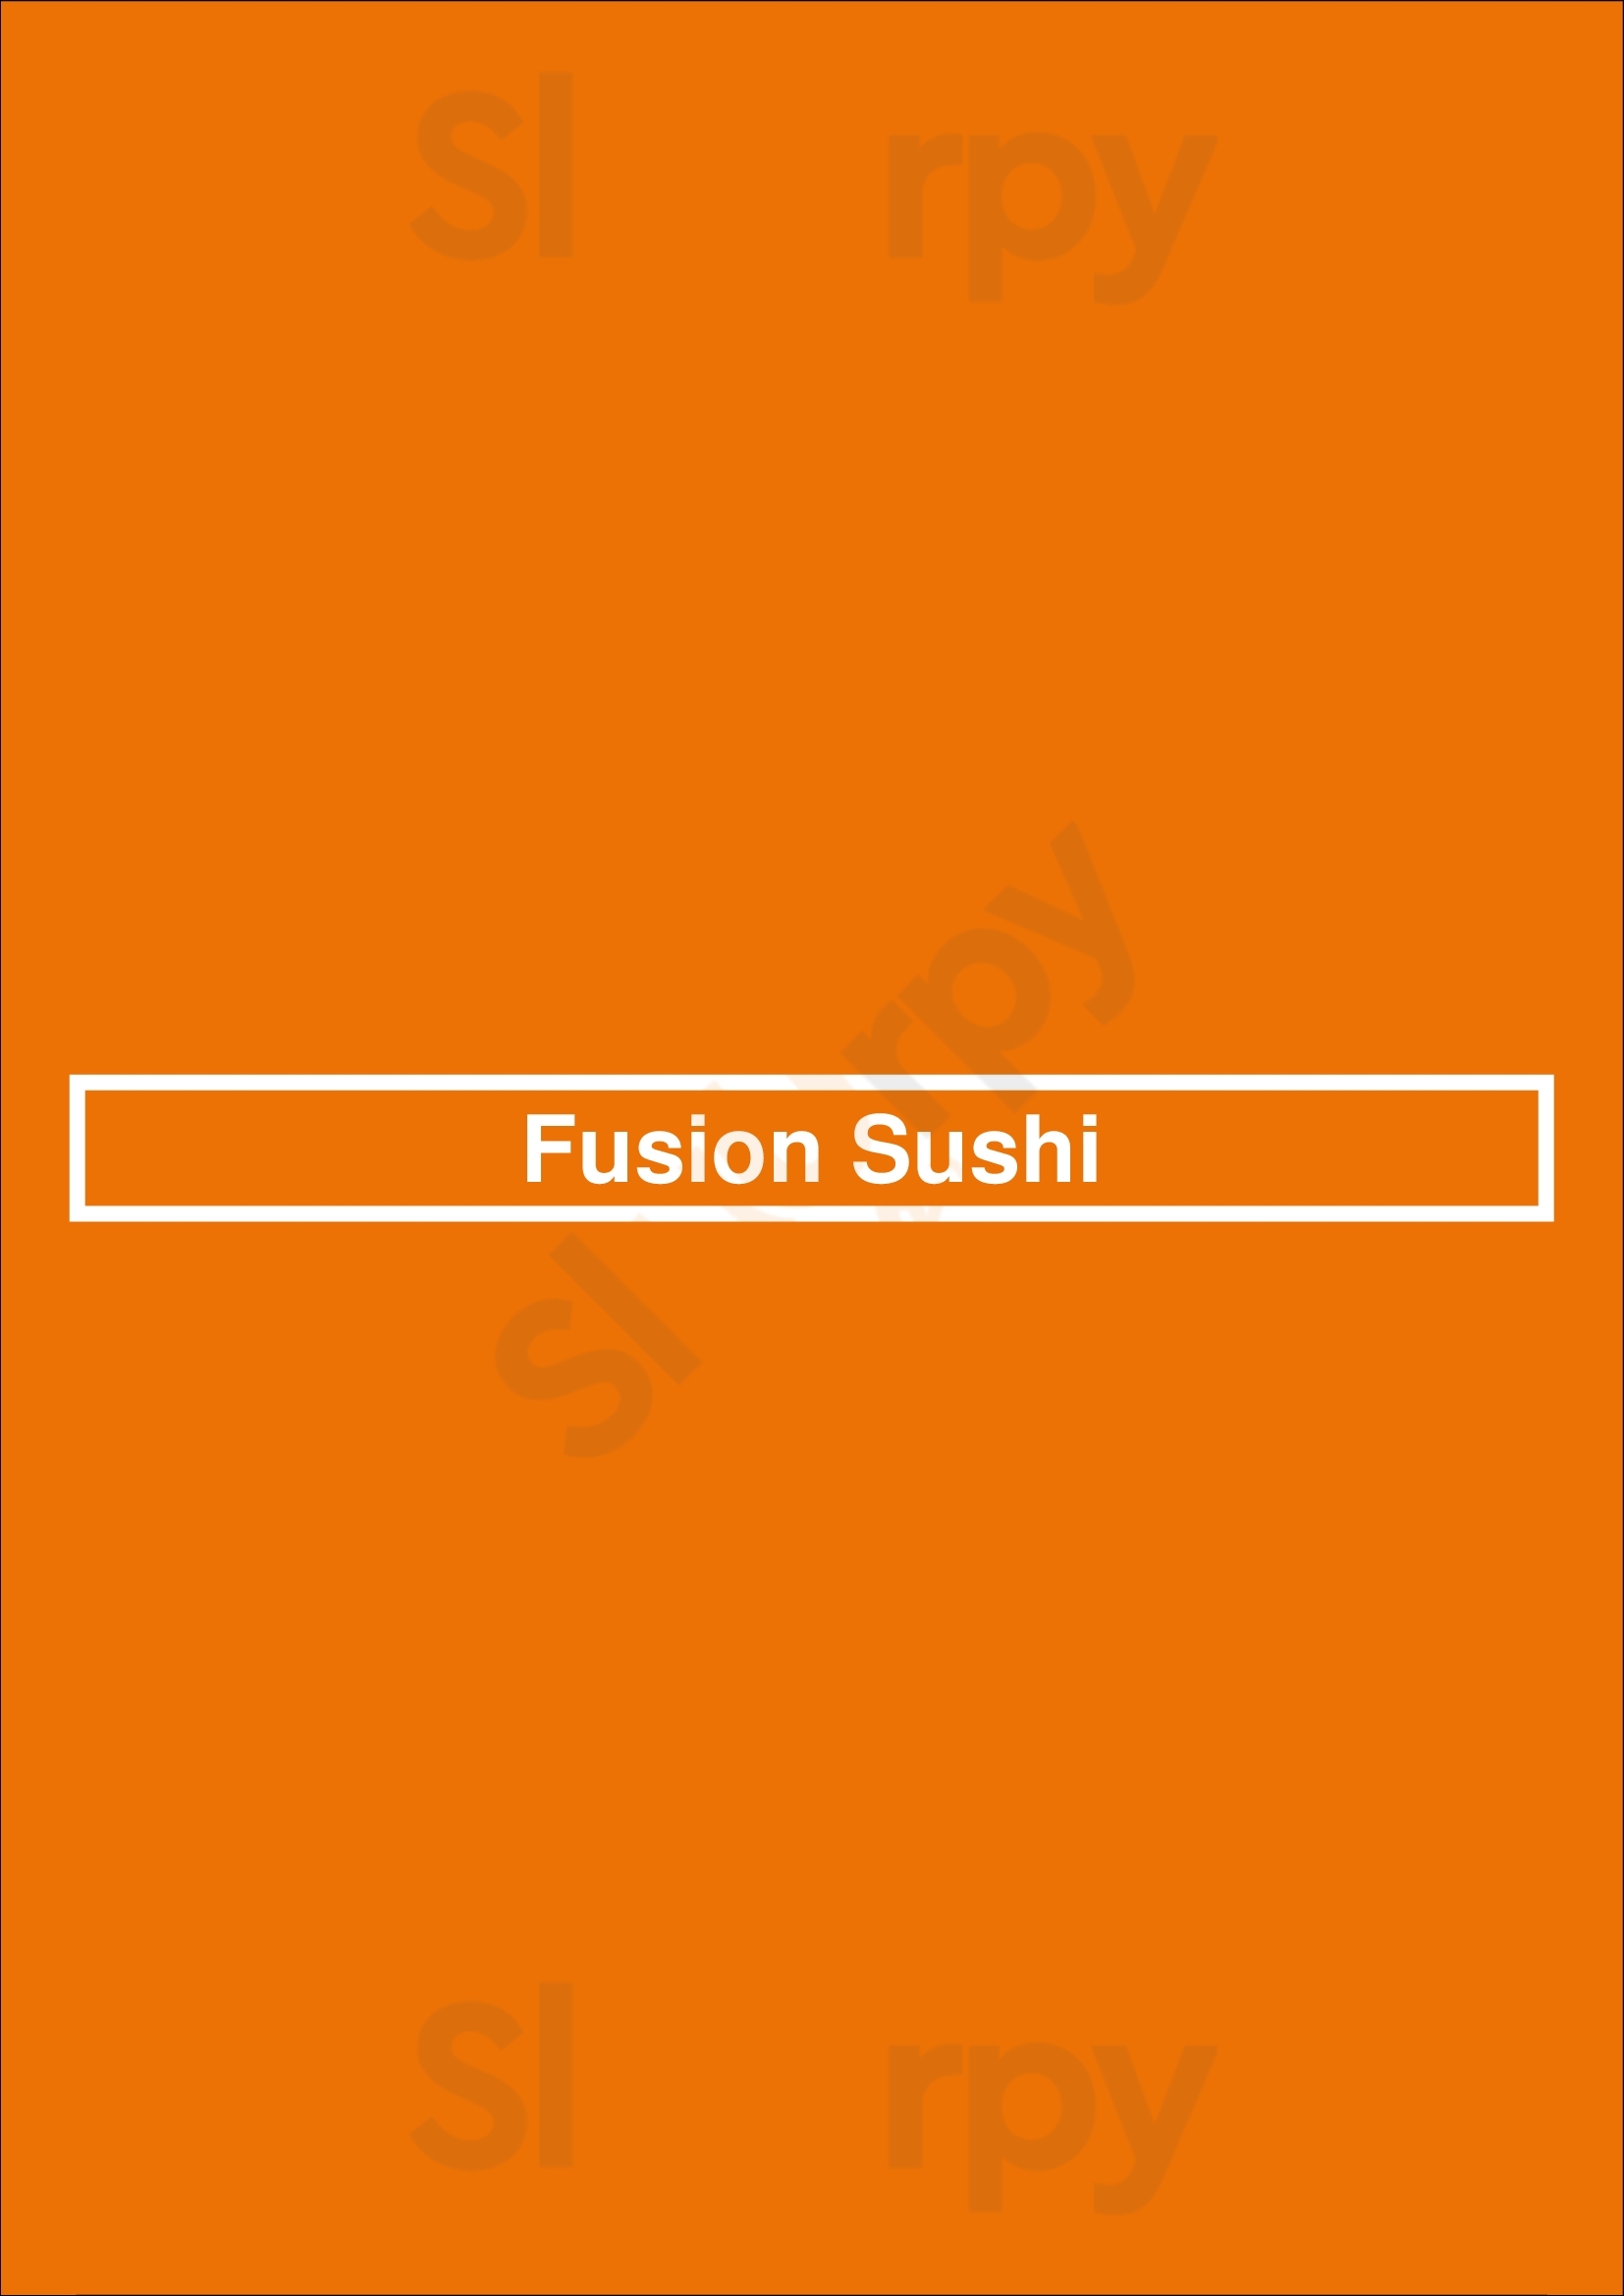 Fusion Sushi Long Beach Menu - 1